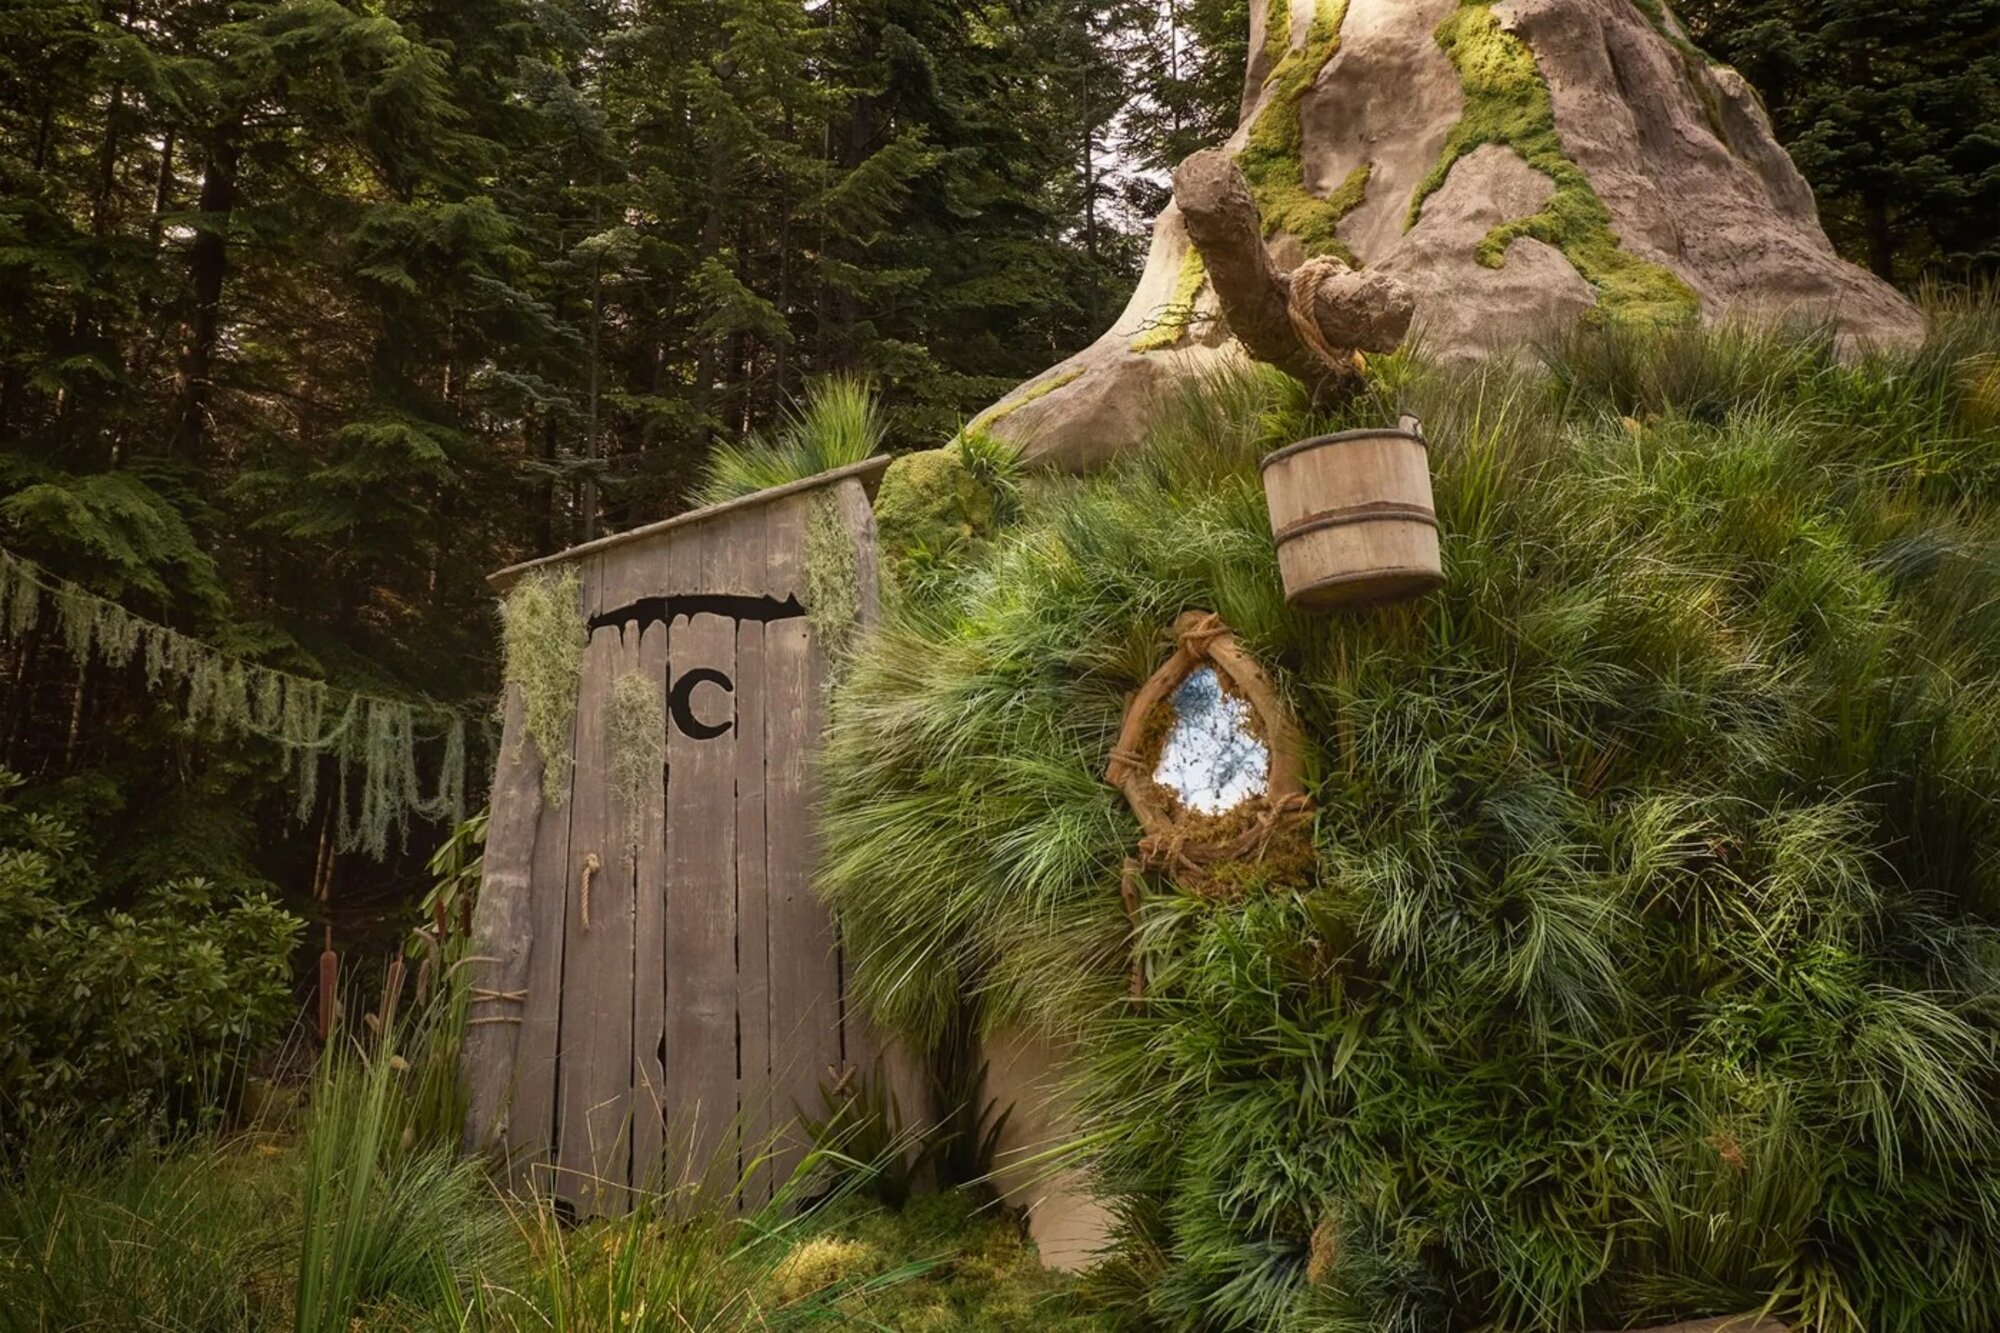 Shrek pecója való életre kelt az Airbnb által